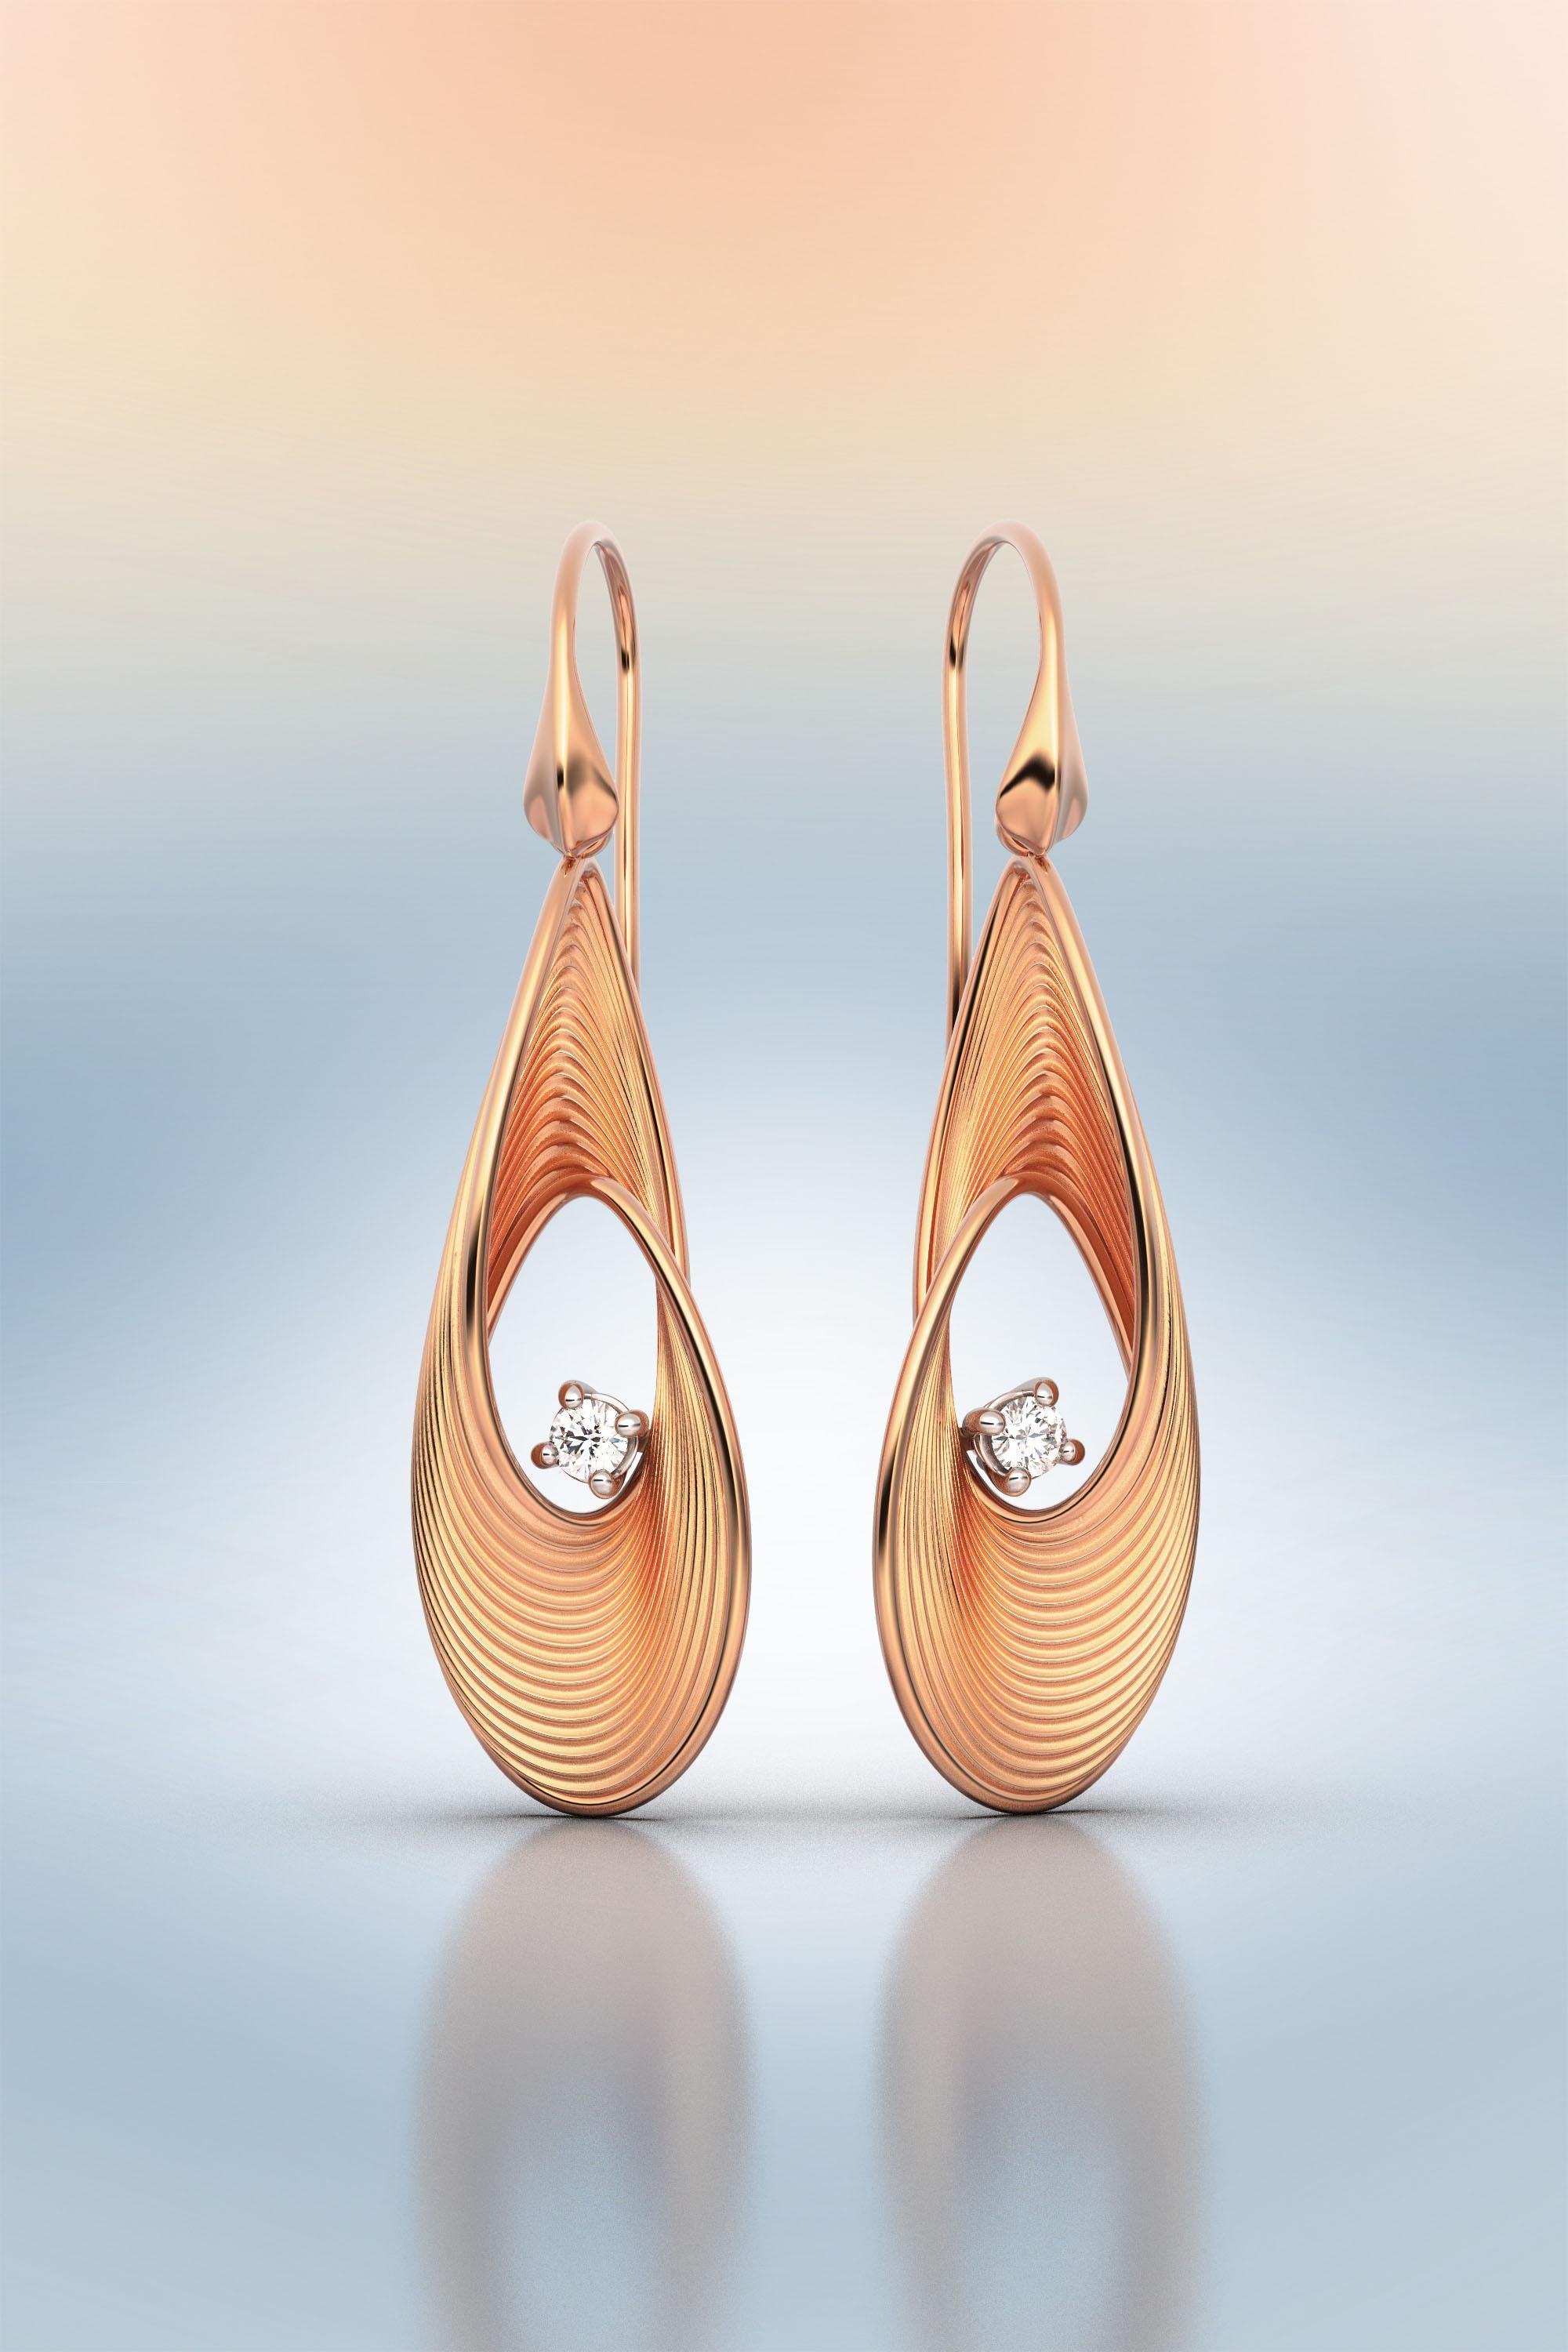 Oltremare Gioielli Diamond Earrings, Dangle Drop Earrings in 18k Solid Gold For Sale 3